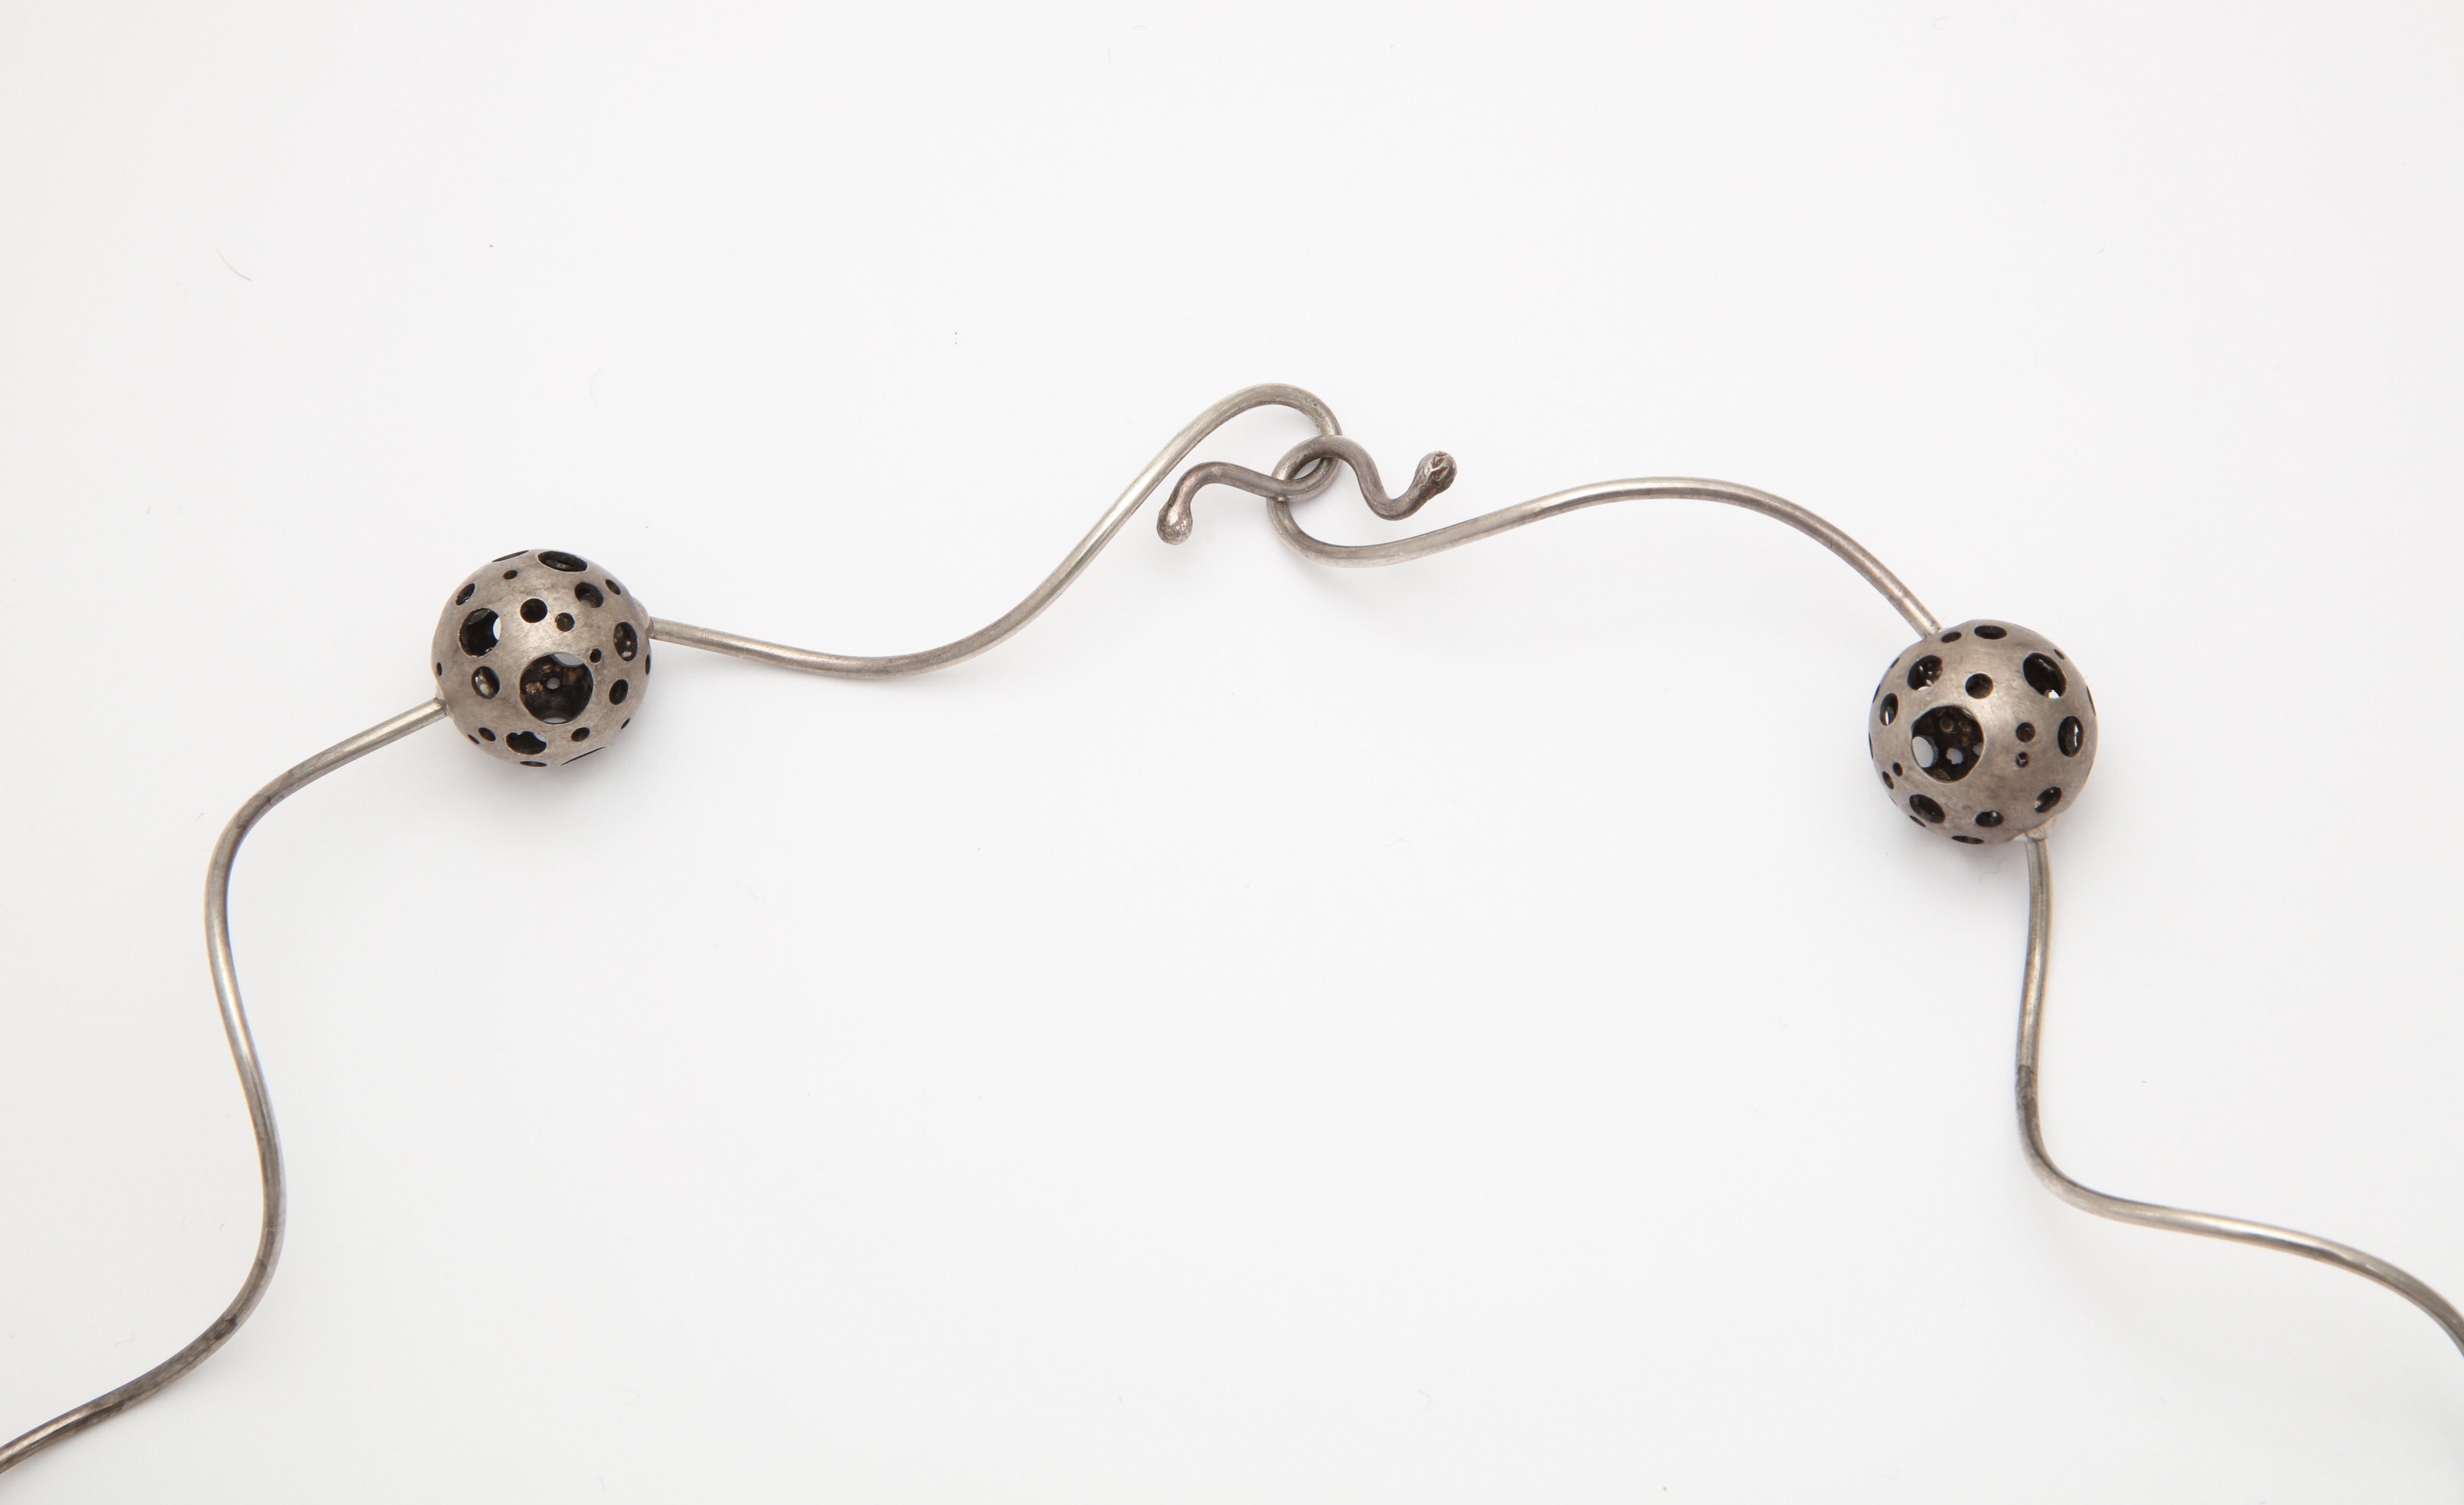 Eine wunderbare modernistische Silberkette mit 9 durchbrochenen Kugeln, die mit gekräuselten Silberstäben durchzogen sind